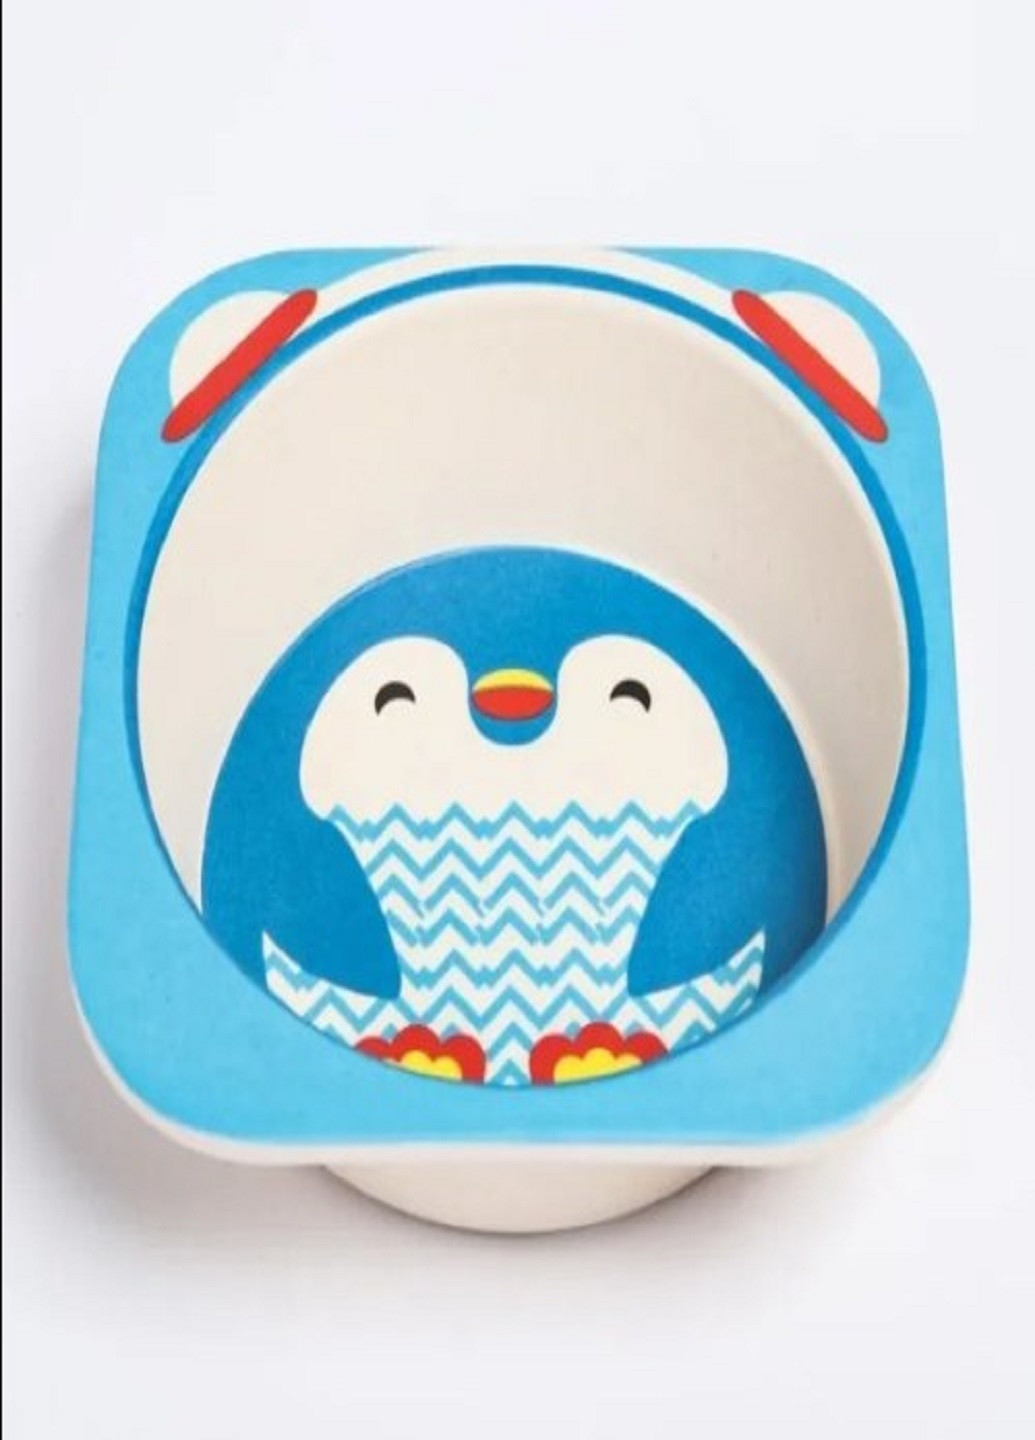 Бамбуковий набір дитячого посуду ECO friendly product 5 предметів пінгвін синій VTech (263360251)